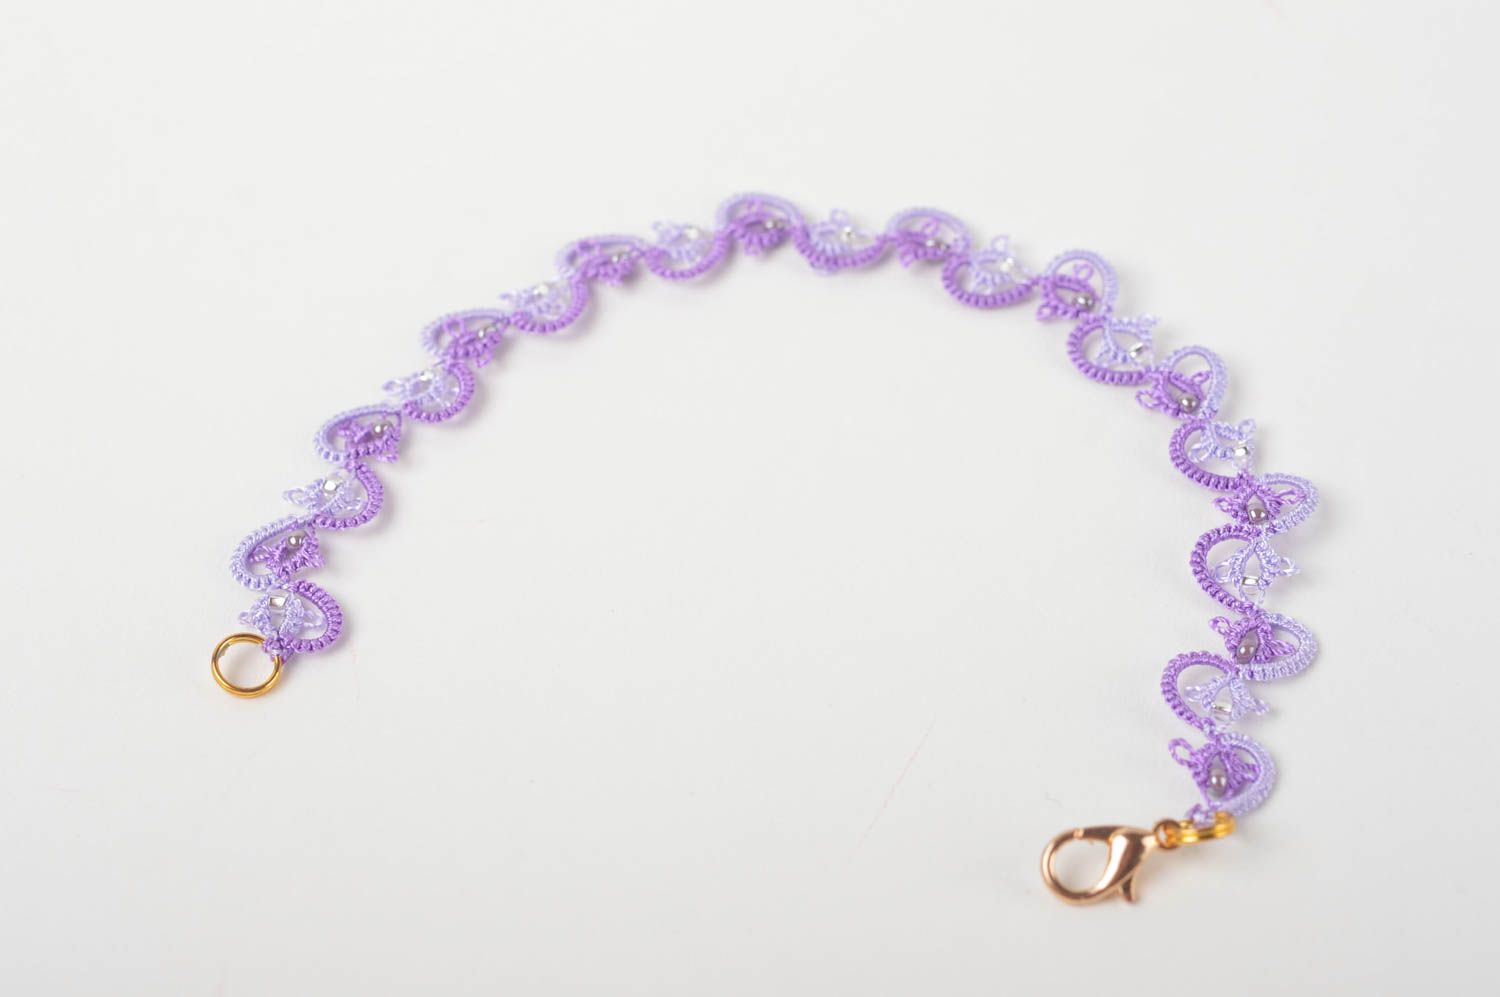 Ажурный браслет ручной работы плетеный женский браслет бижутерия фриволите фото 2